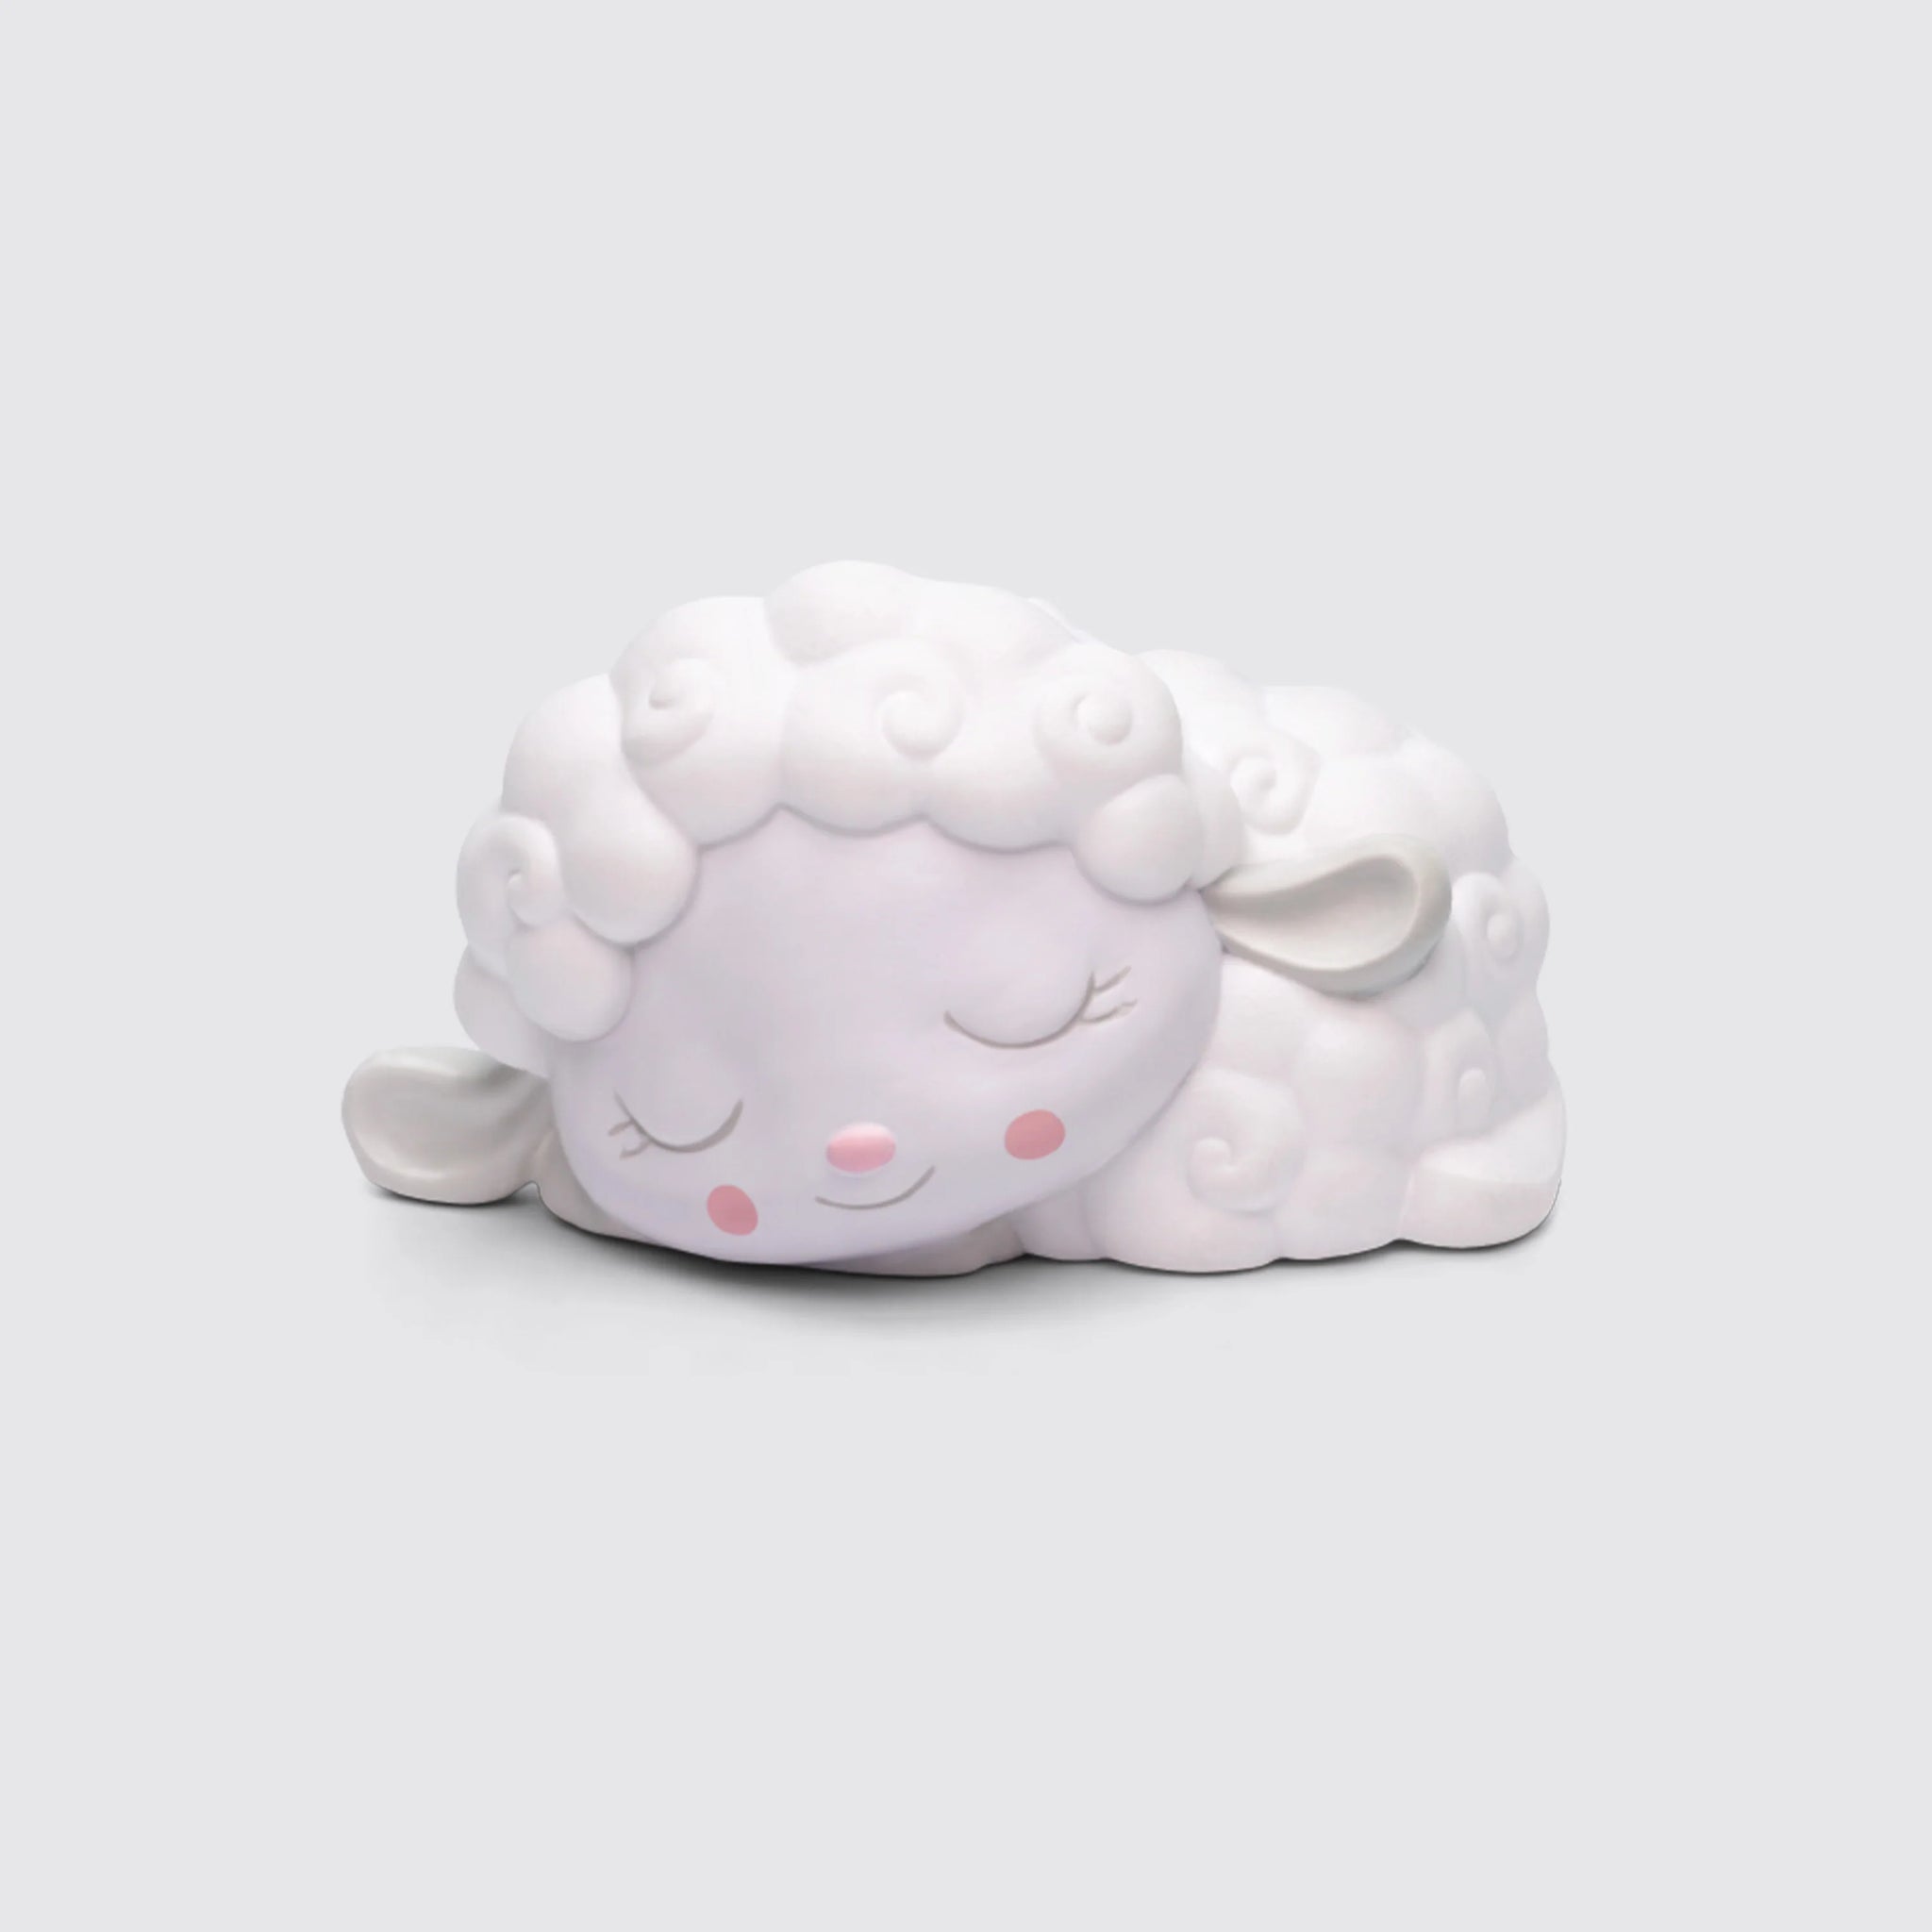 Tonies Sleepy Friends - Lullaby Melodies w/Sleepy Sheep